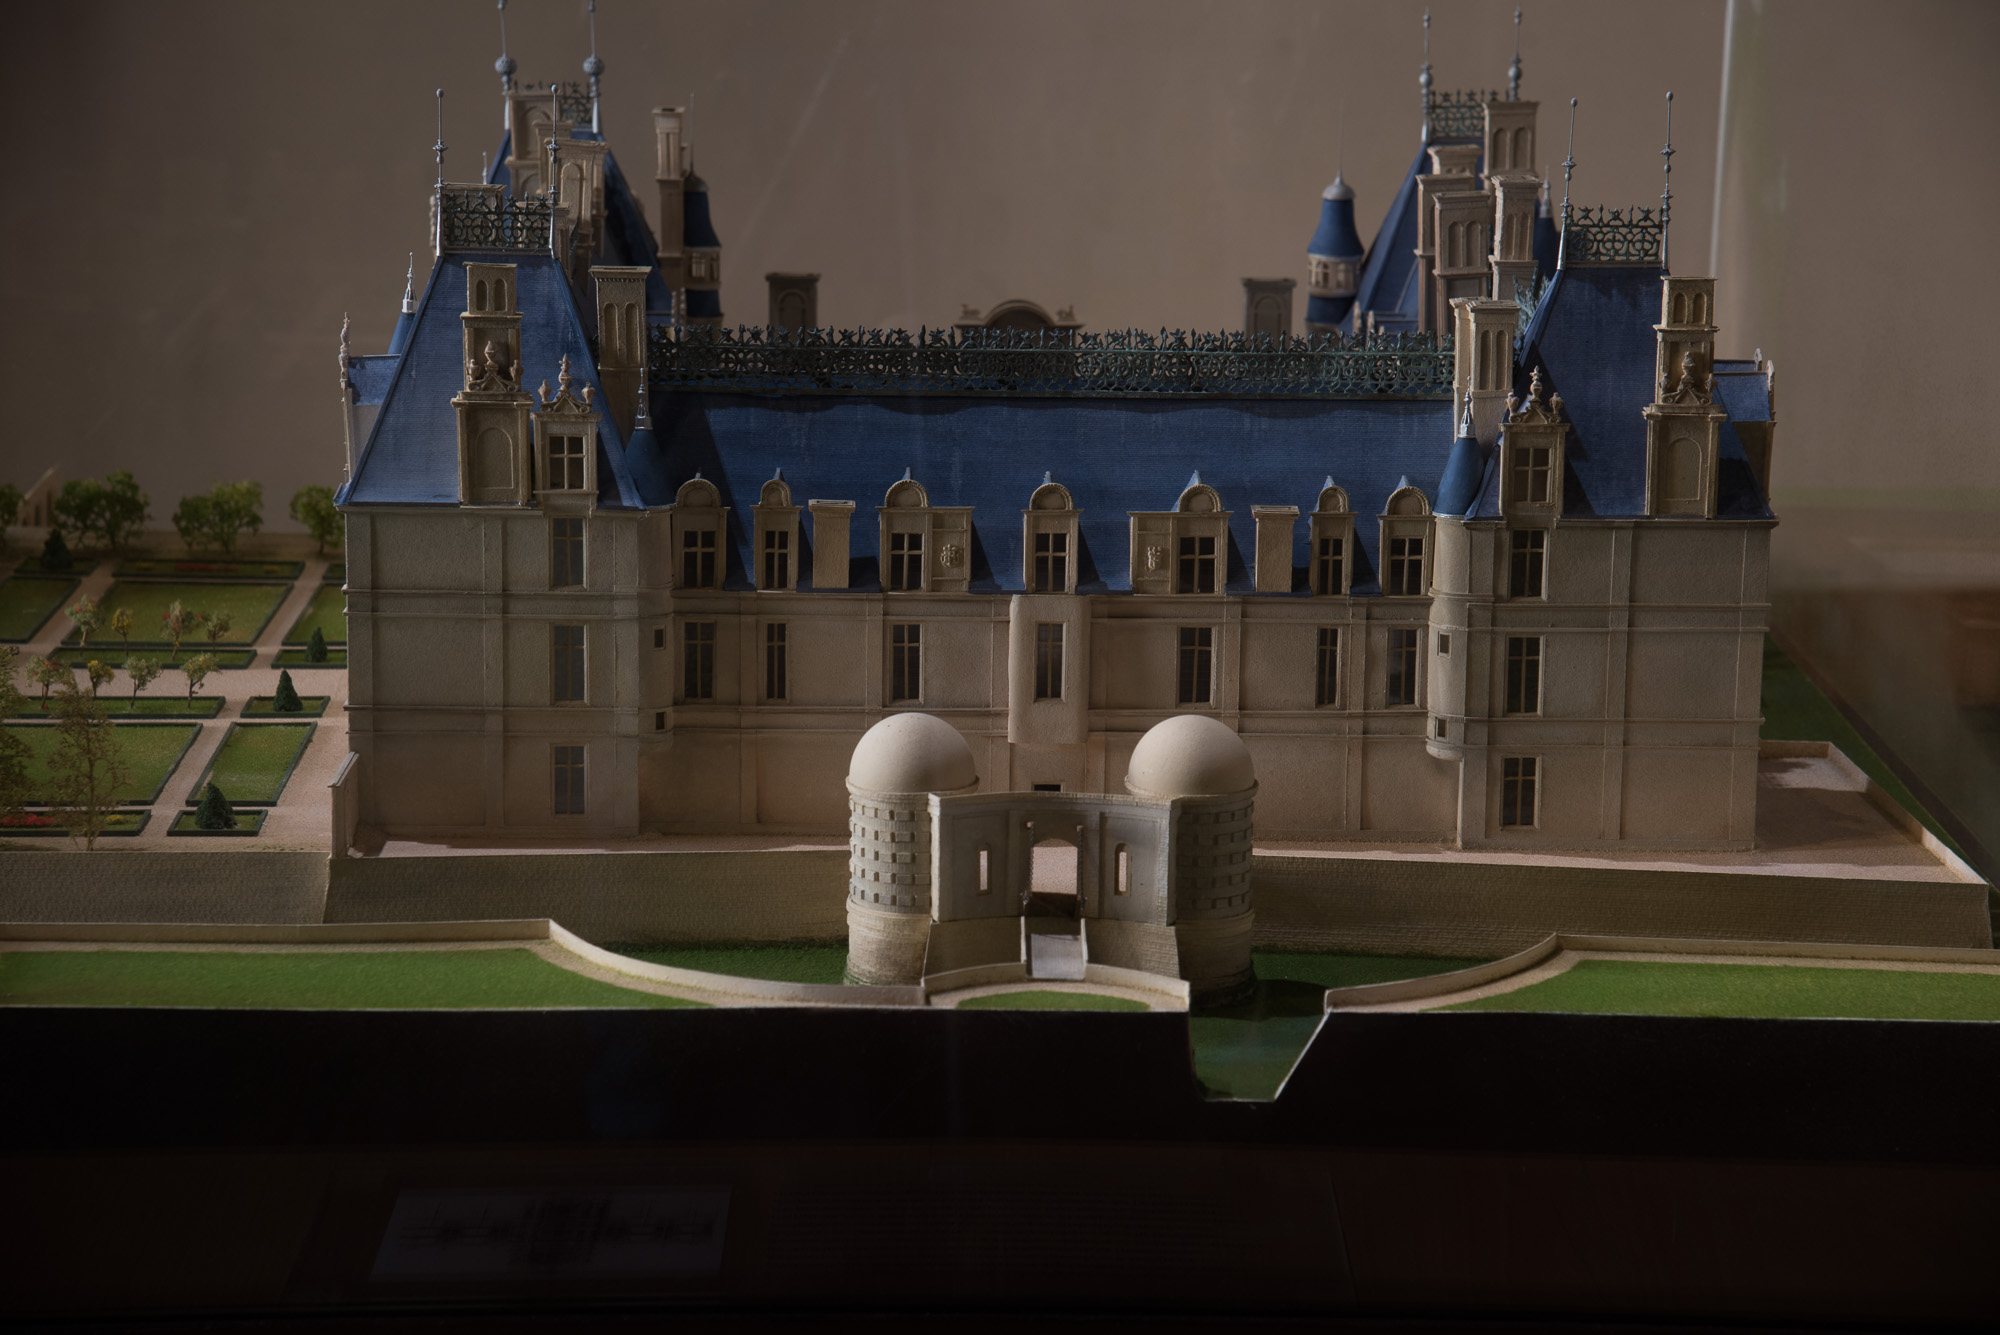 La maquette du château exposée  au rez-de-chaussée. Elle présente l'édifice au milieu du XVIème siècle, avec l'aile disparue et le jeu de paume édifié contre la terrasse Nord.